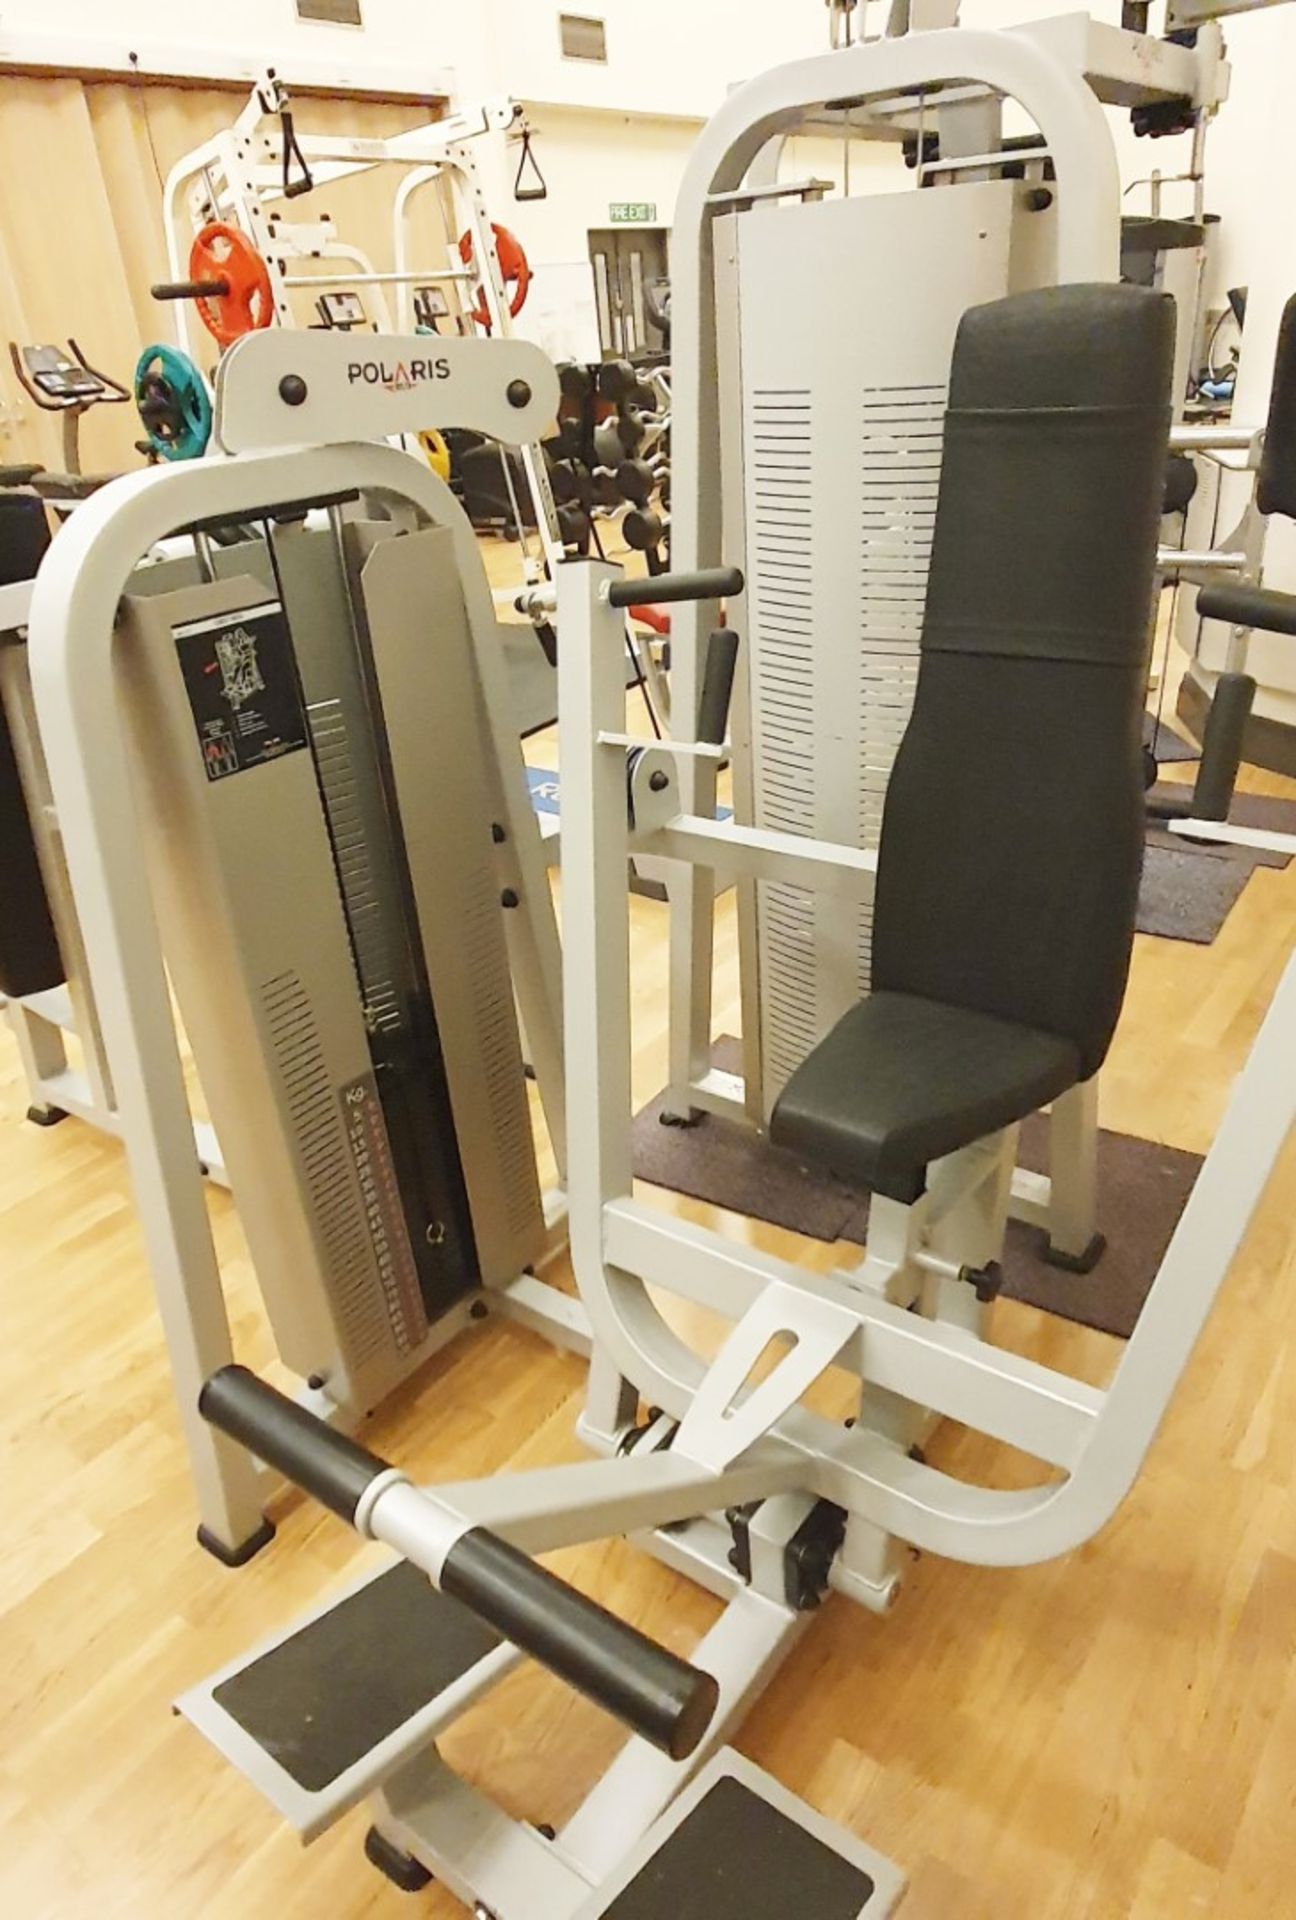 1 x Polaris DE-101 Chest Press Commercial Gym Machine - CL552 - Location: West Yorkshire This item